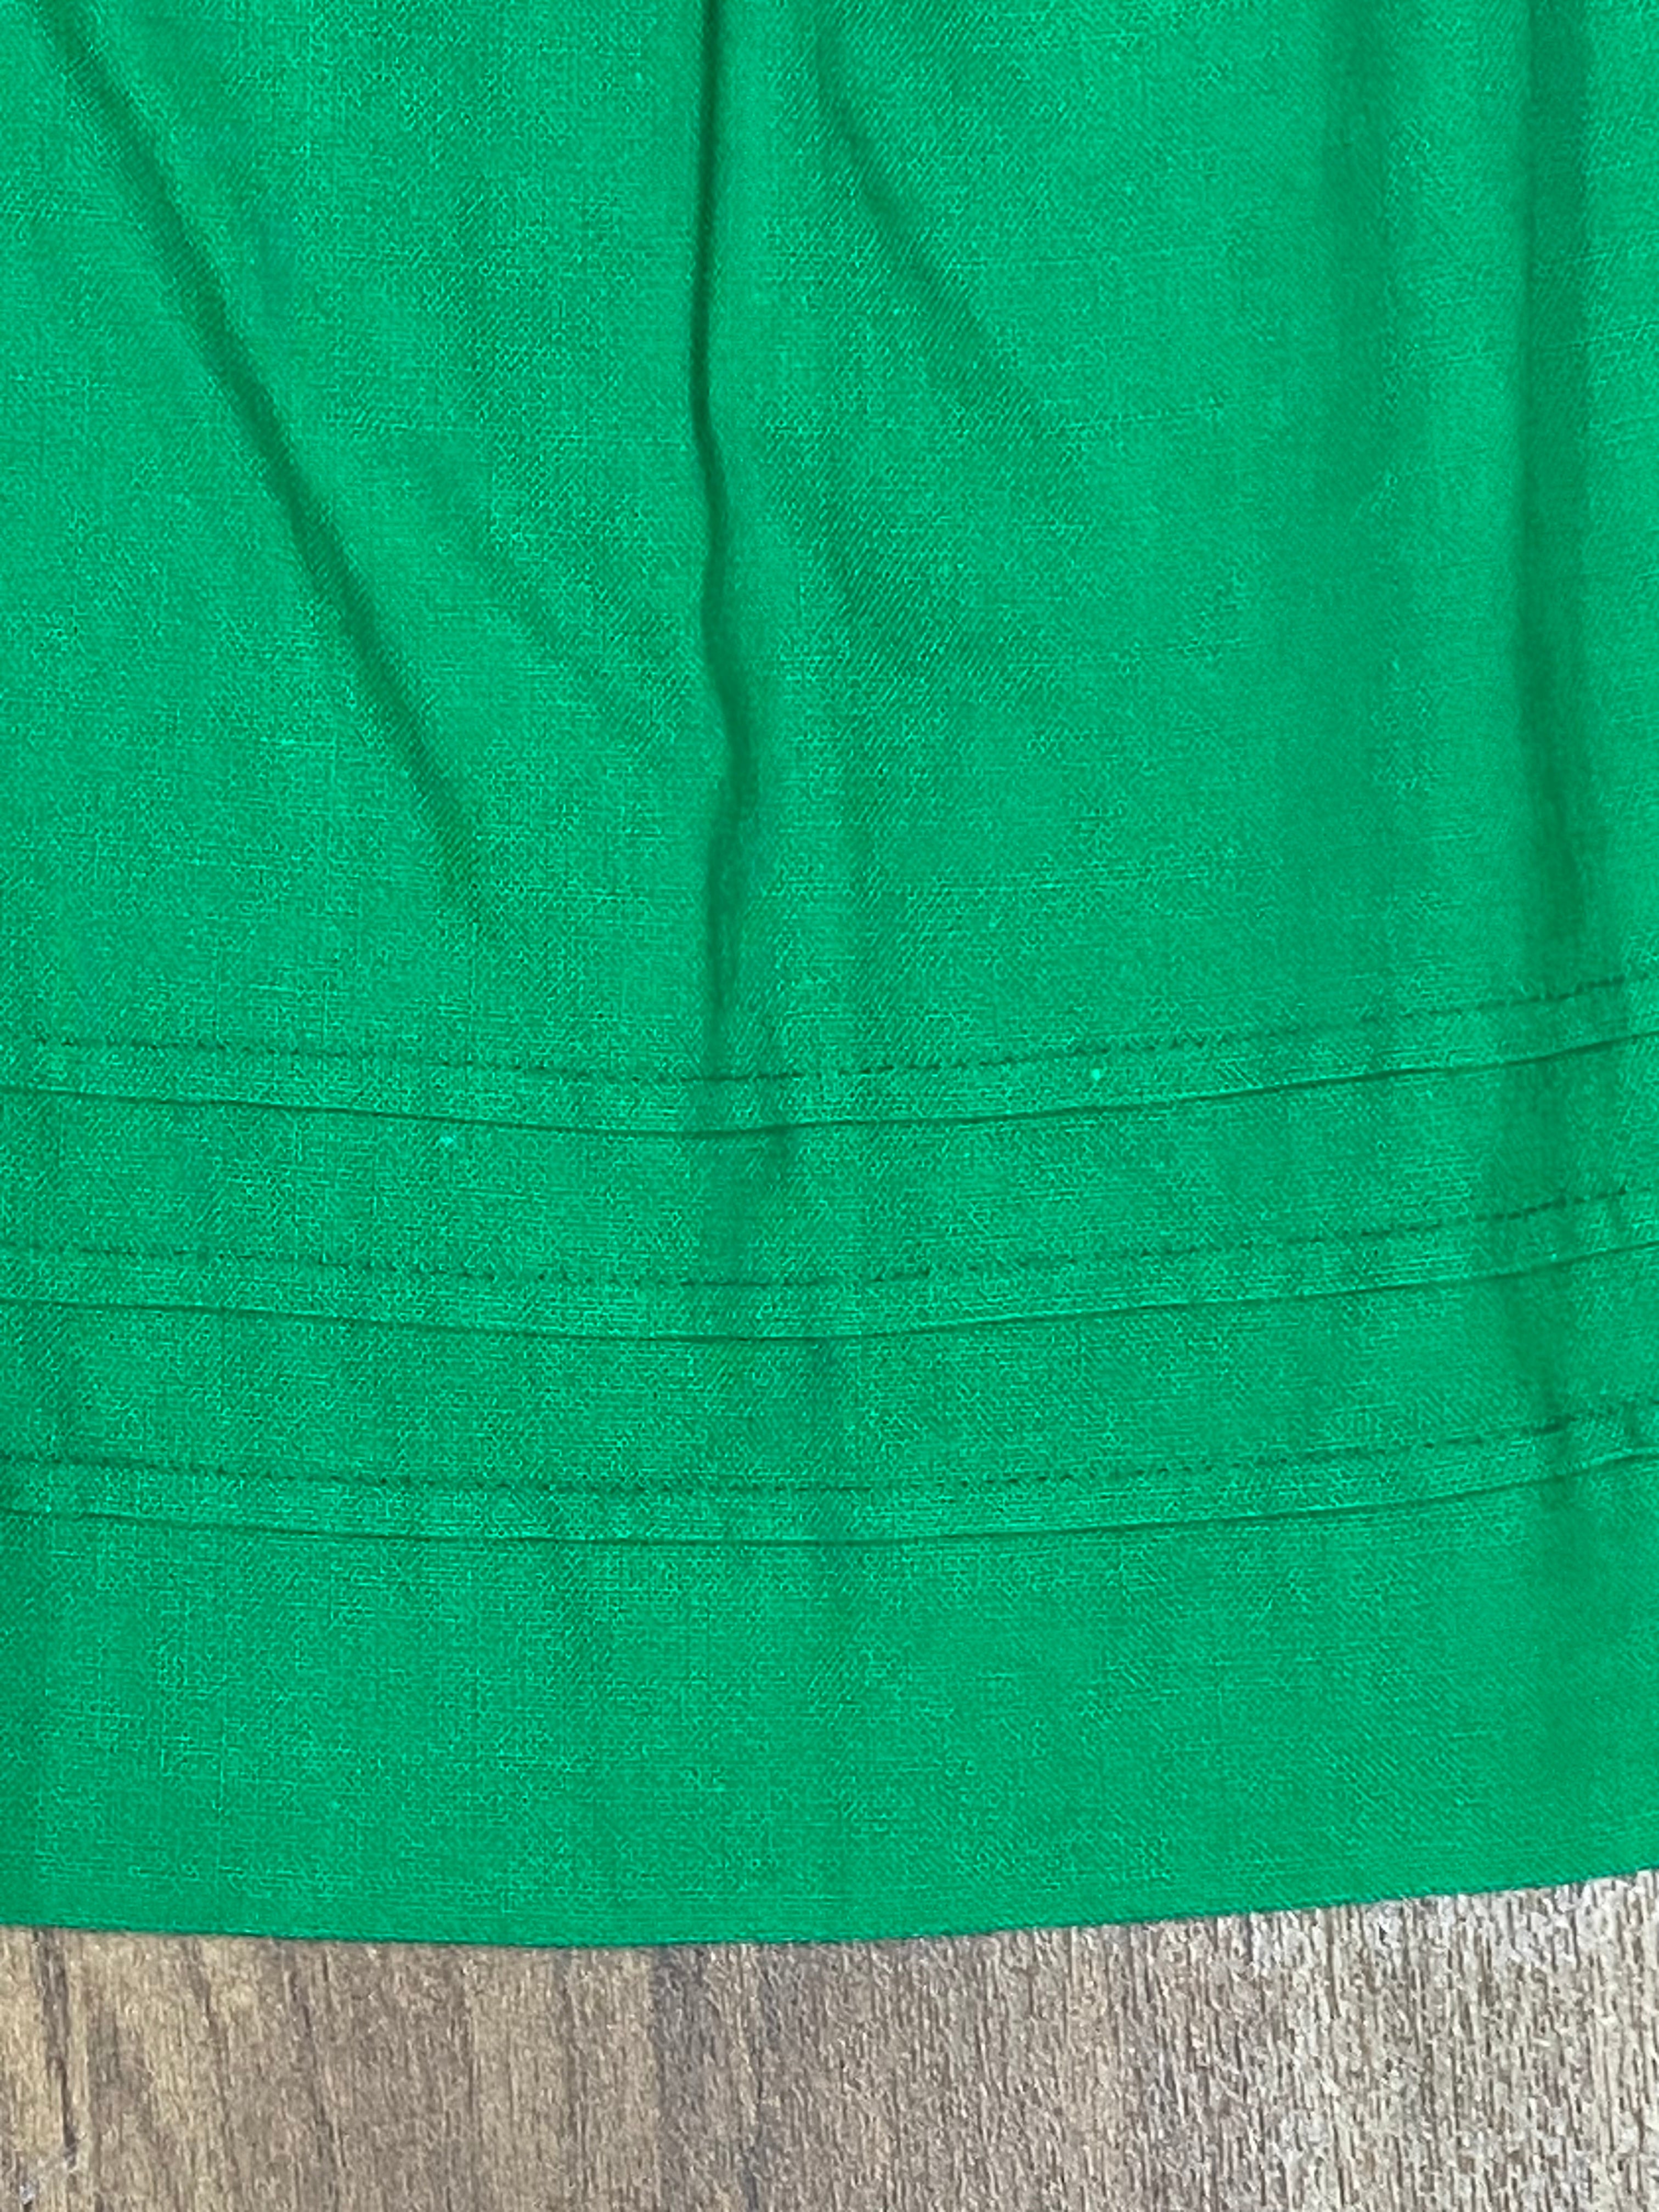 Second Hand Dirndschürze in grün, Länge 59cm